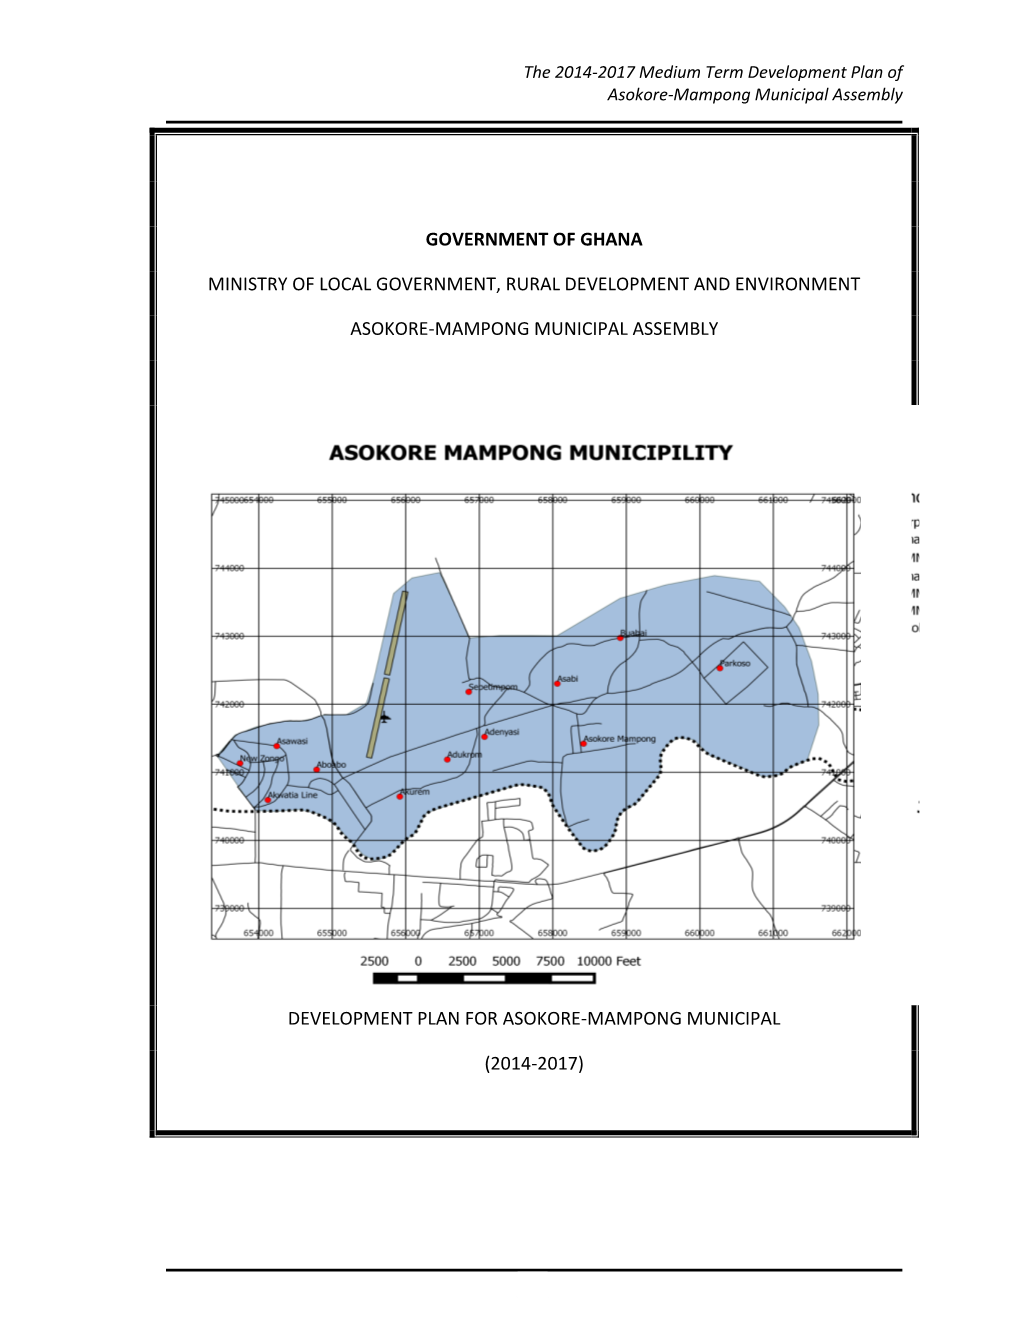 The 2014-2017 Medium Term Development Plan for Asokore Mampong Municipal Assembly